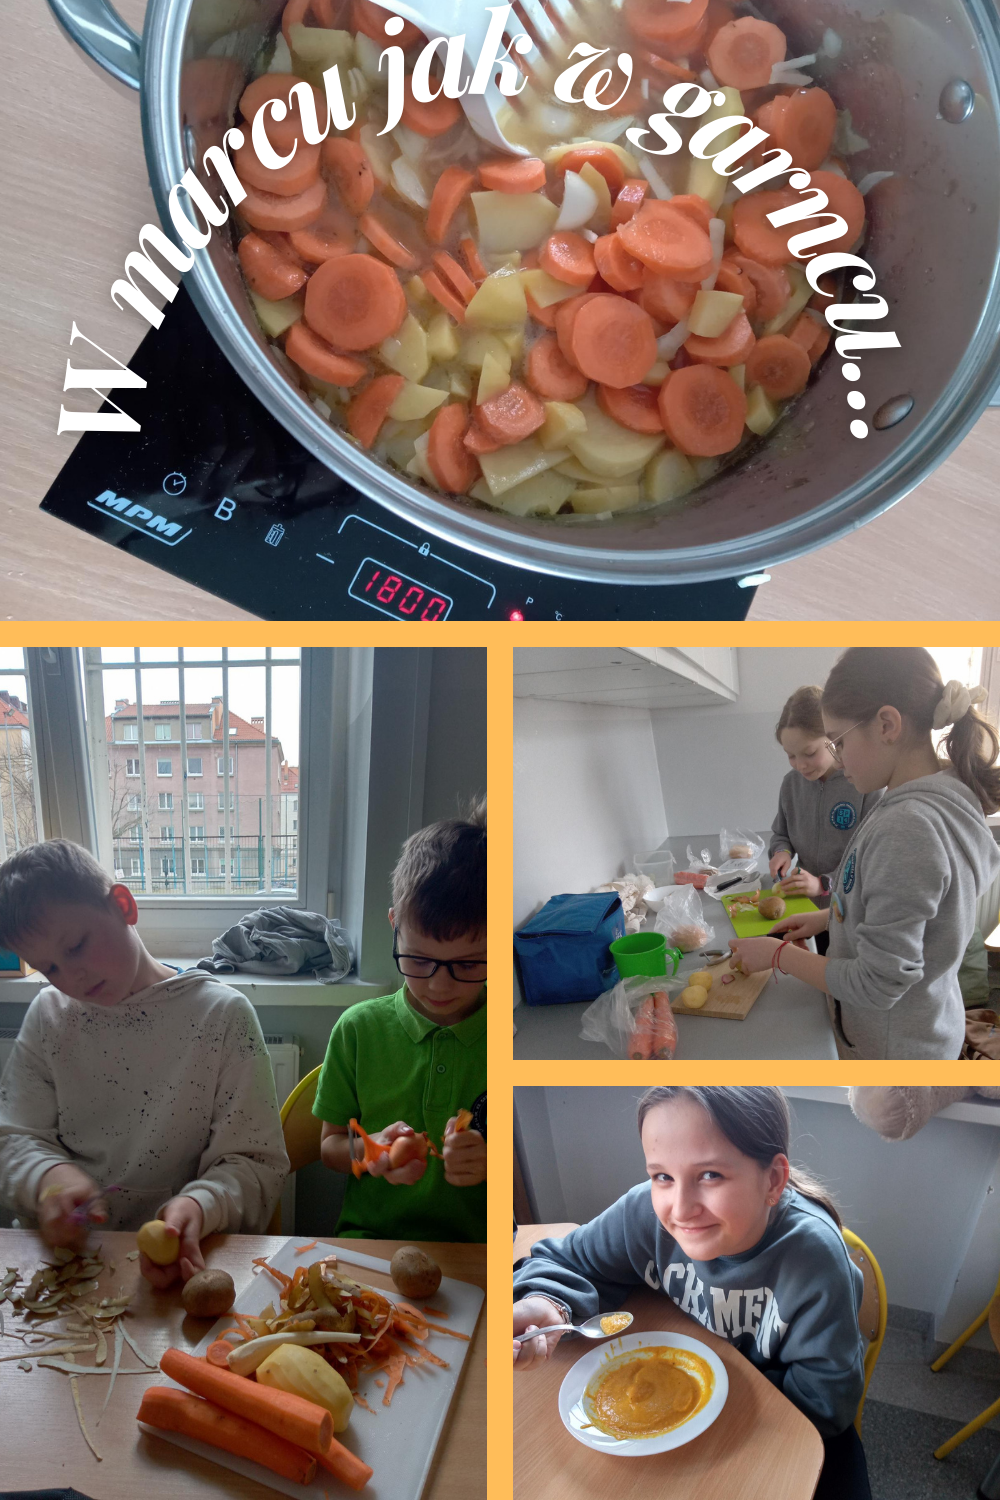 Na zdjęcich widać uczniów przygotowujących zupę. Obierających  i k rojących warzywa, mieszających w garnku składniki. A na koniec gotową zupę krem z marchewki, którą można się już delektować.